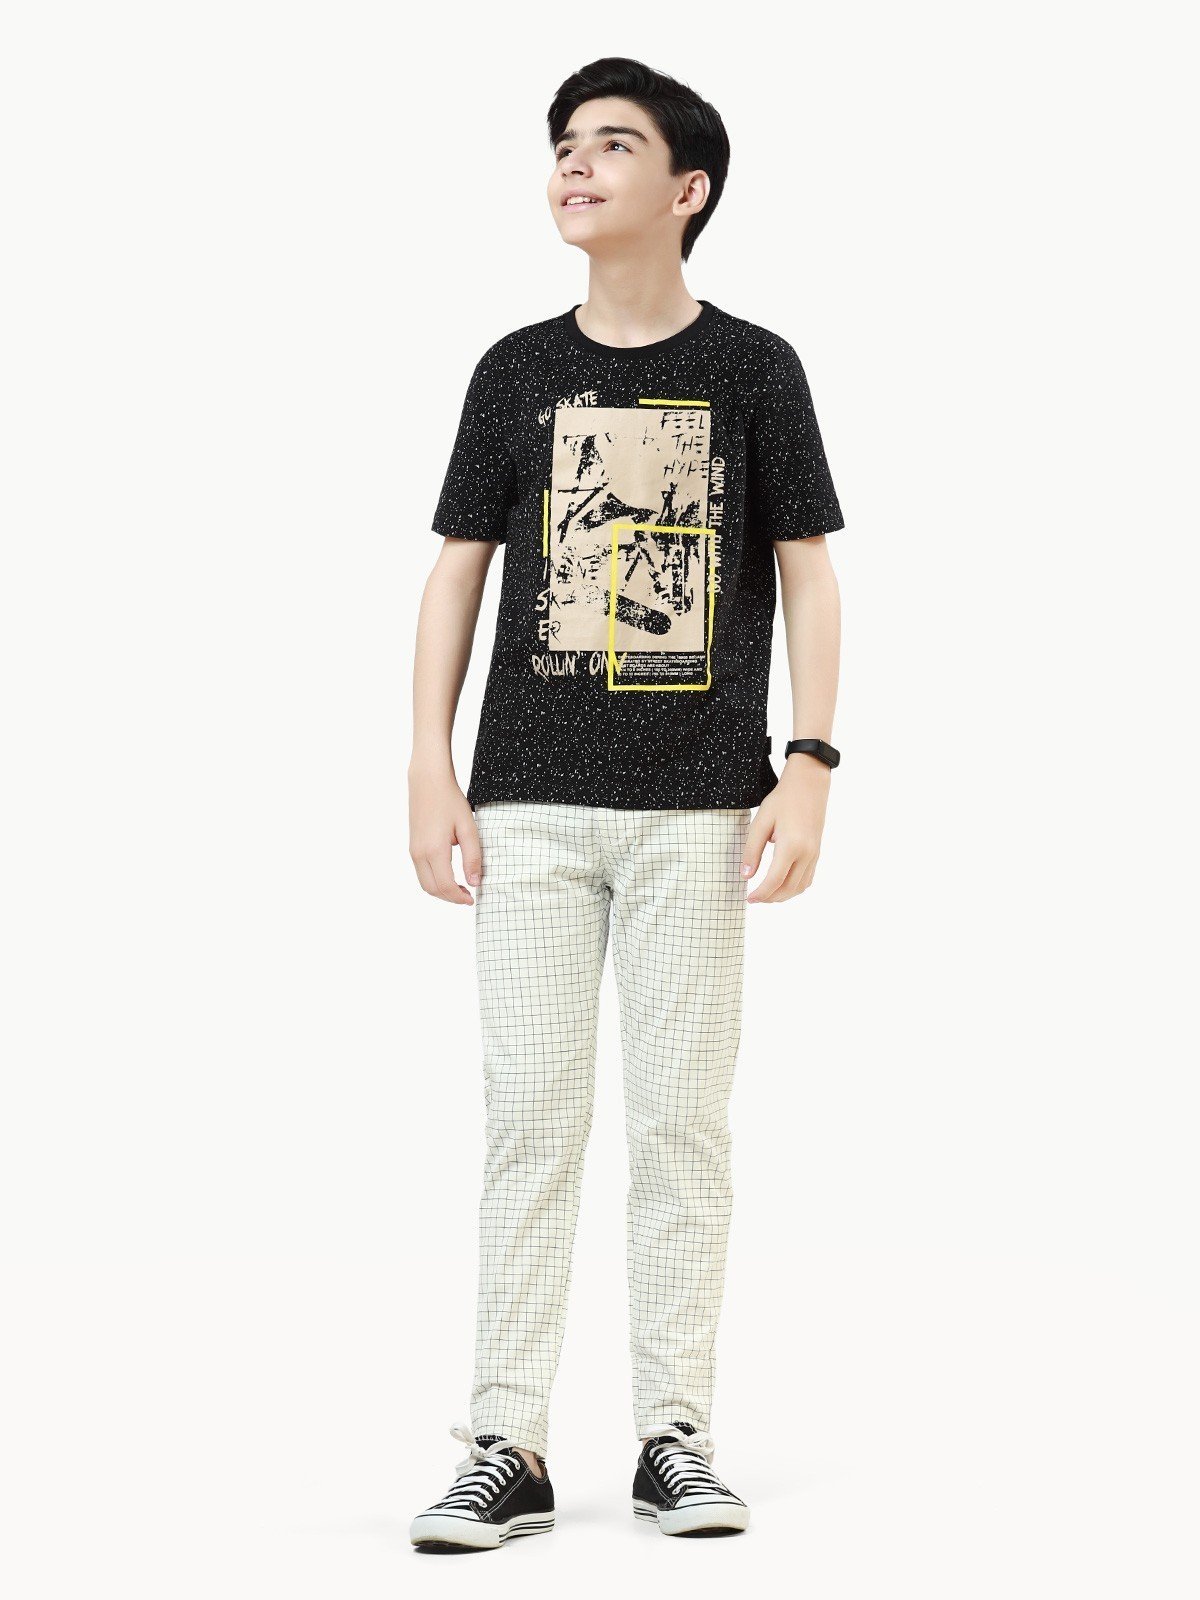 Boy's Black T-Shirt - EBTTS22-007